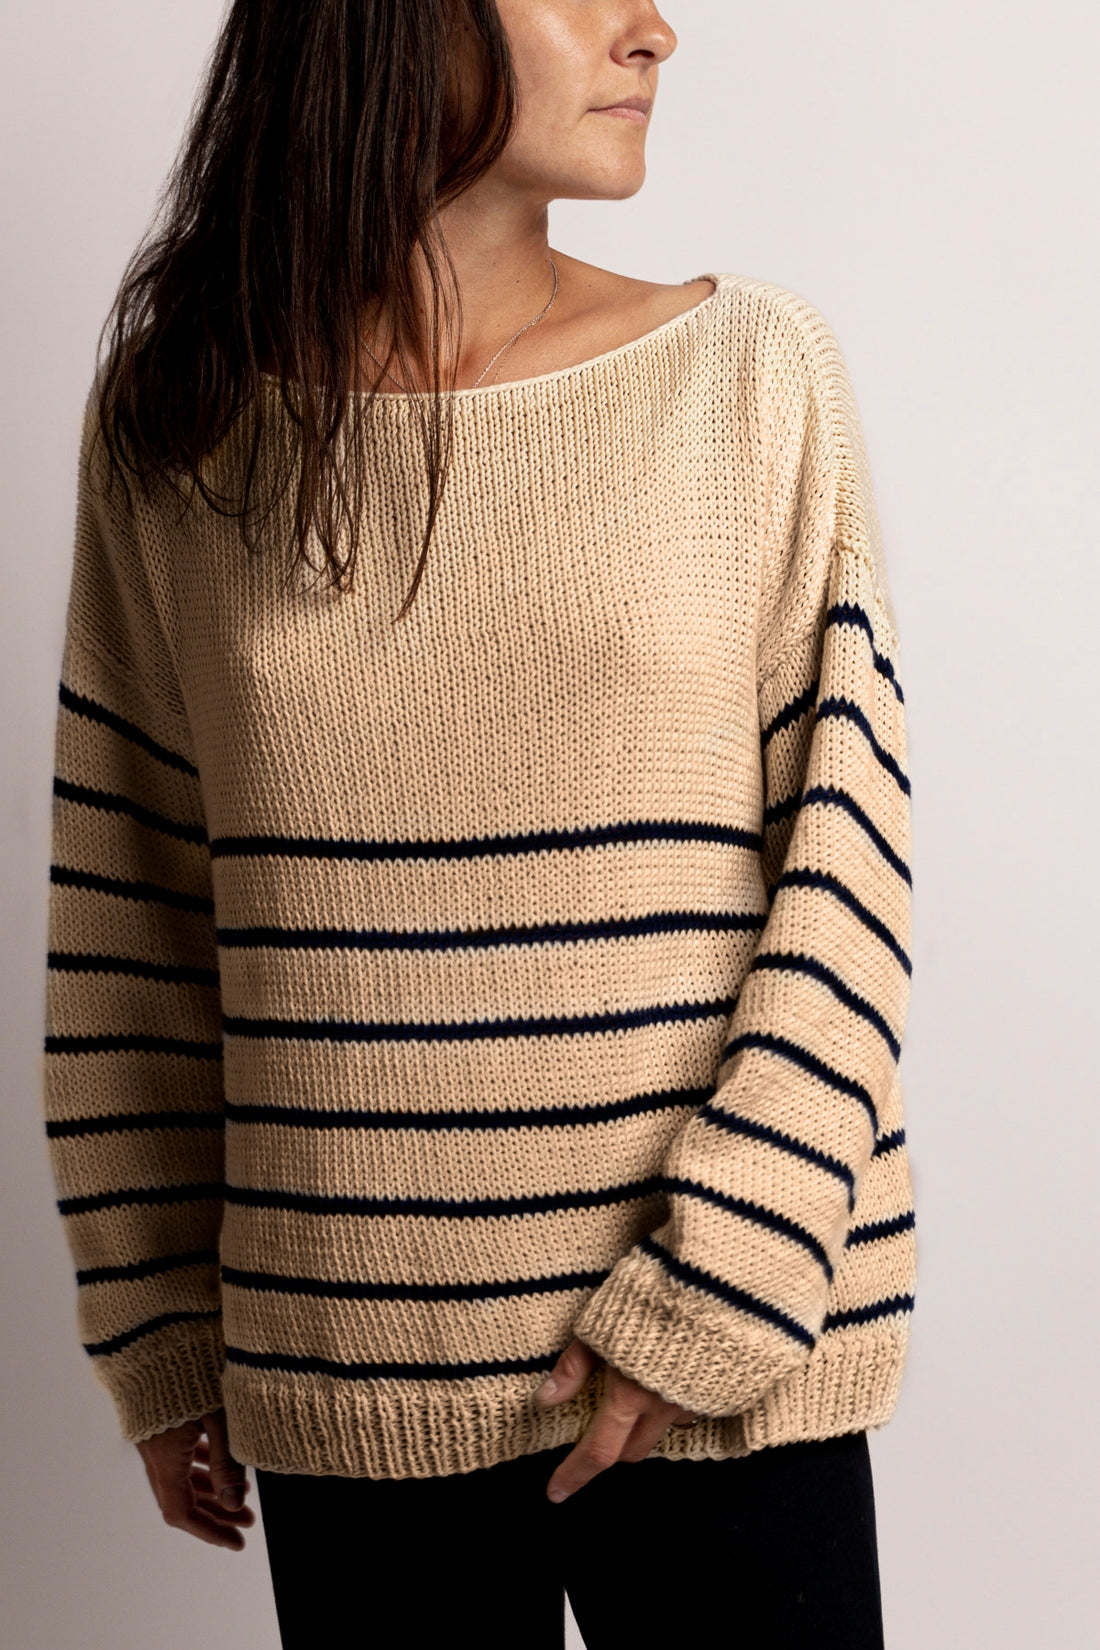 Abruzzo Sweater Kit